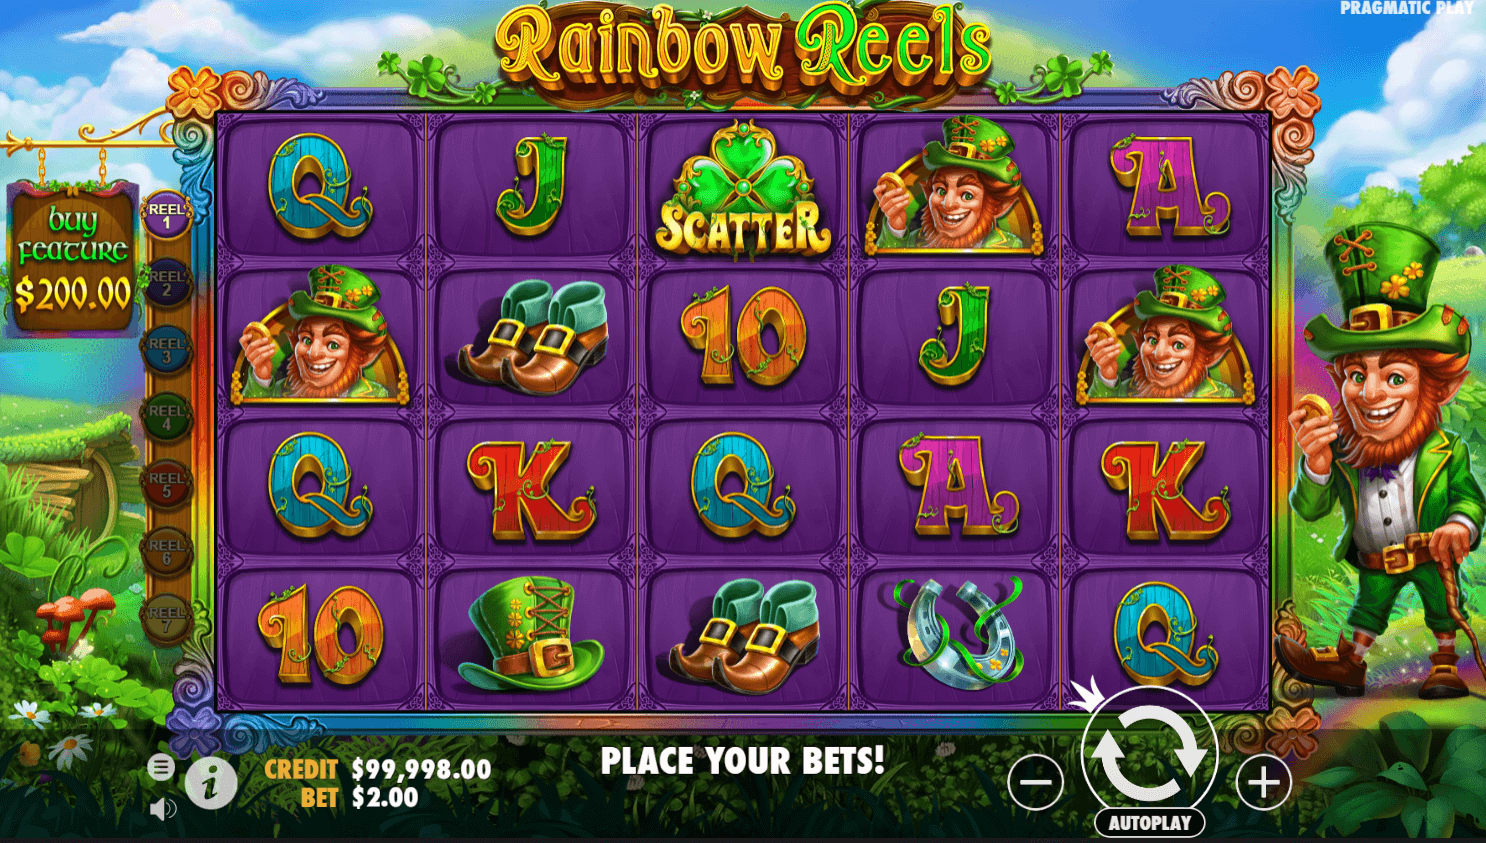 Rainbow Reels pragmatic play slot online demo